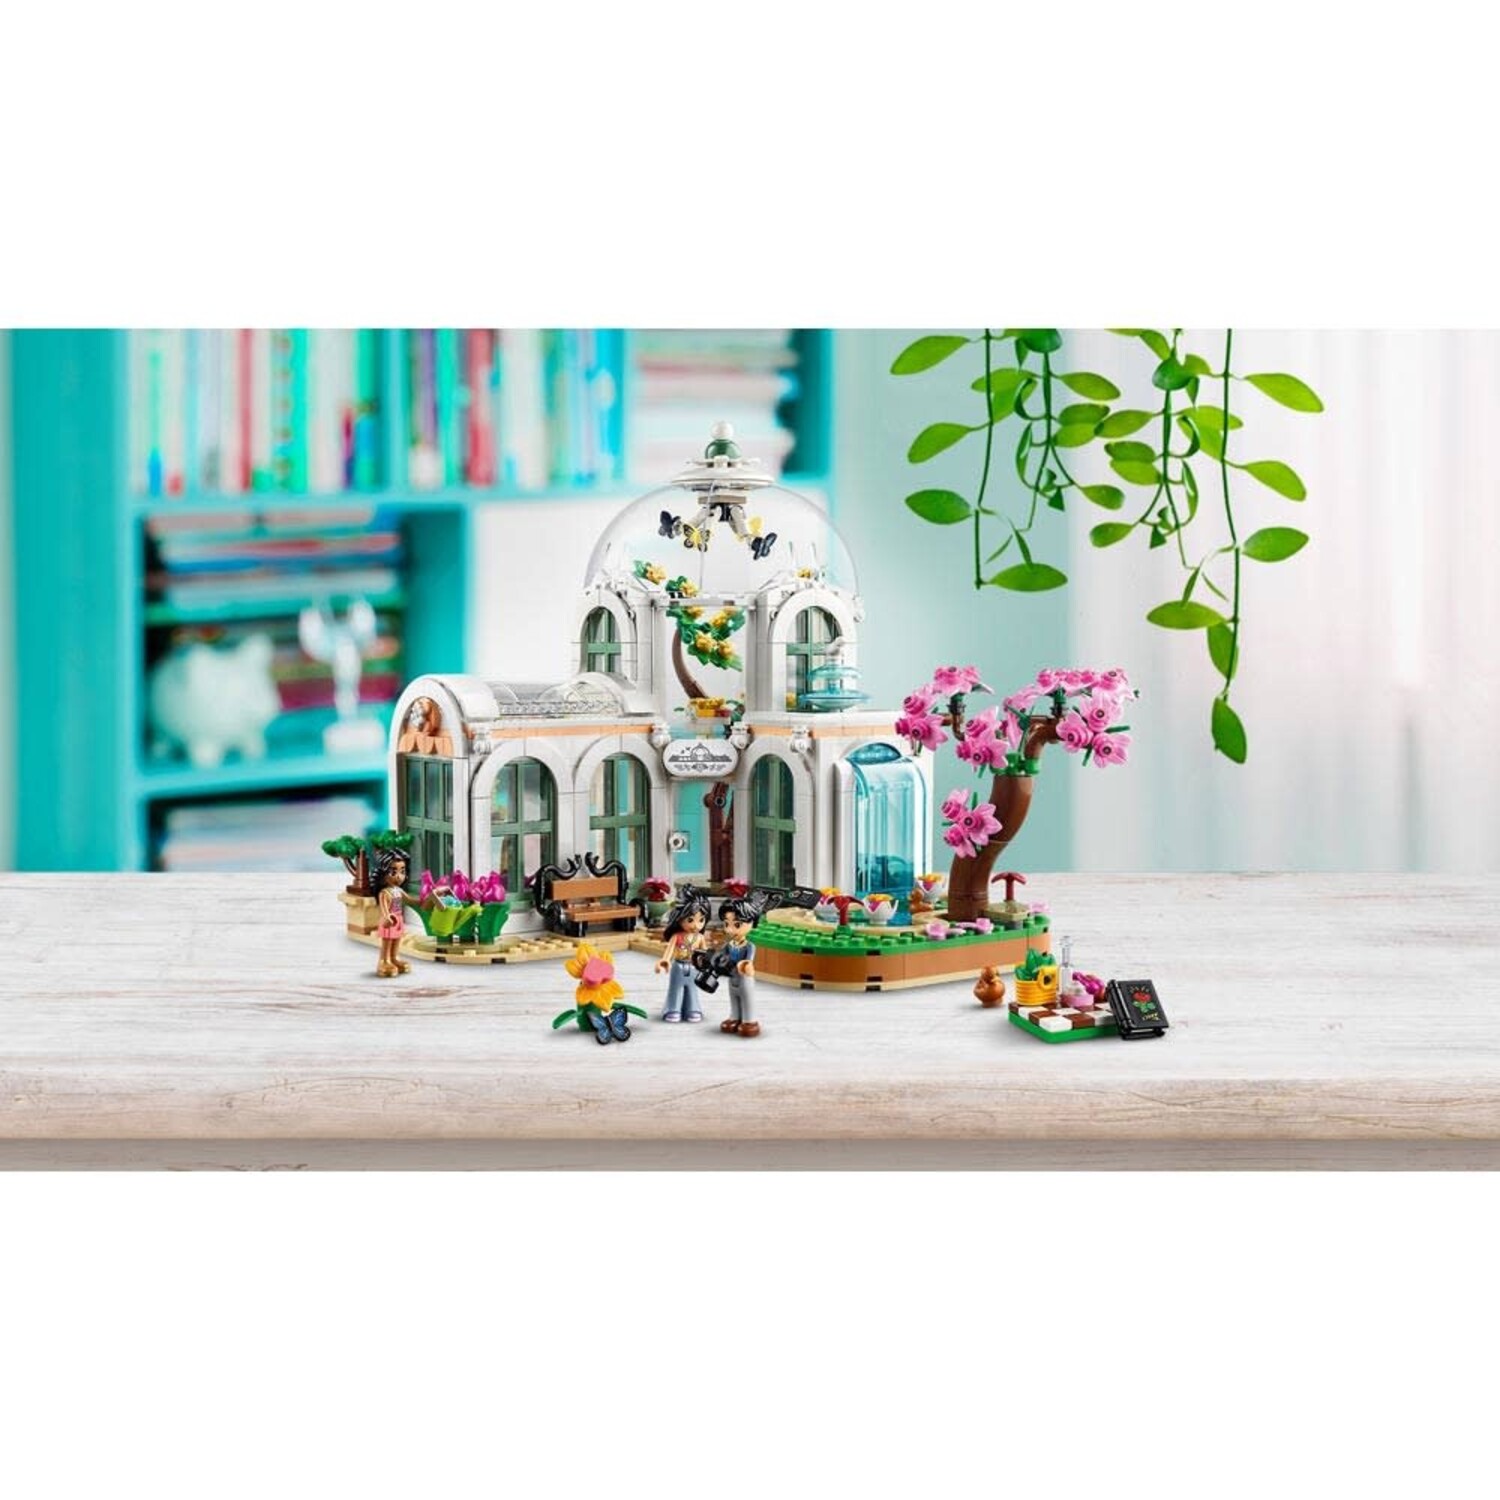 41757 Jardin botanique et LEGO Friends' un nouvel avenir radieux